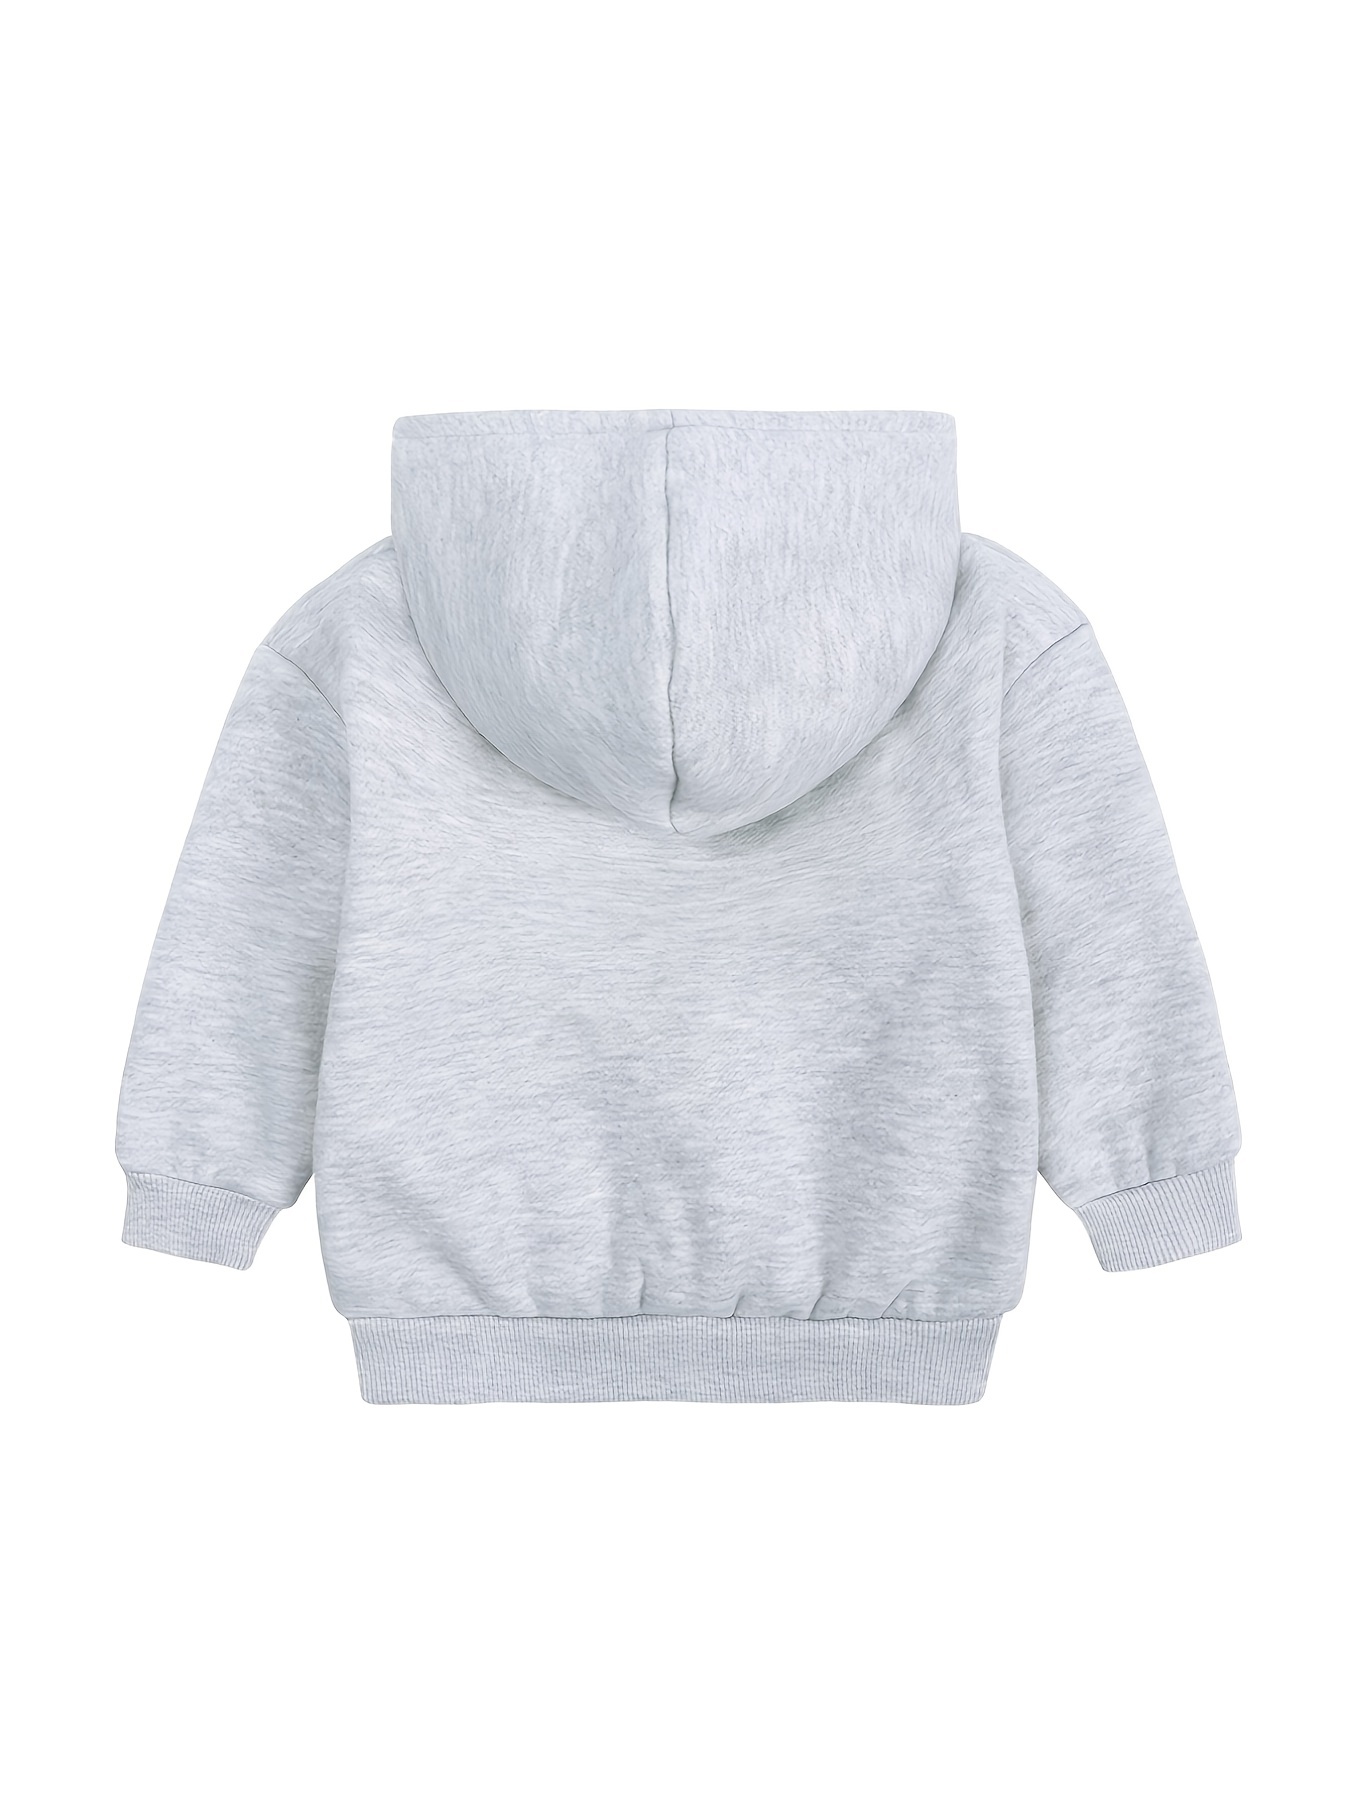 Girls Fleece Zip Hoodie Sweatshirt Warm & Comfortable Fit Jacquard